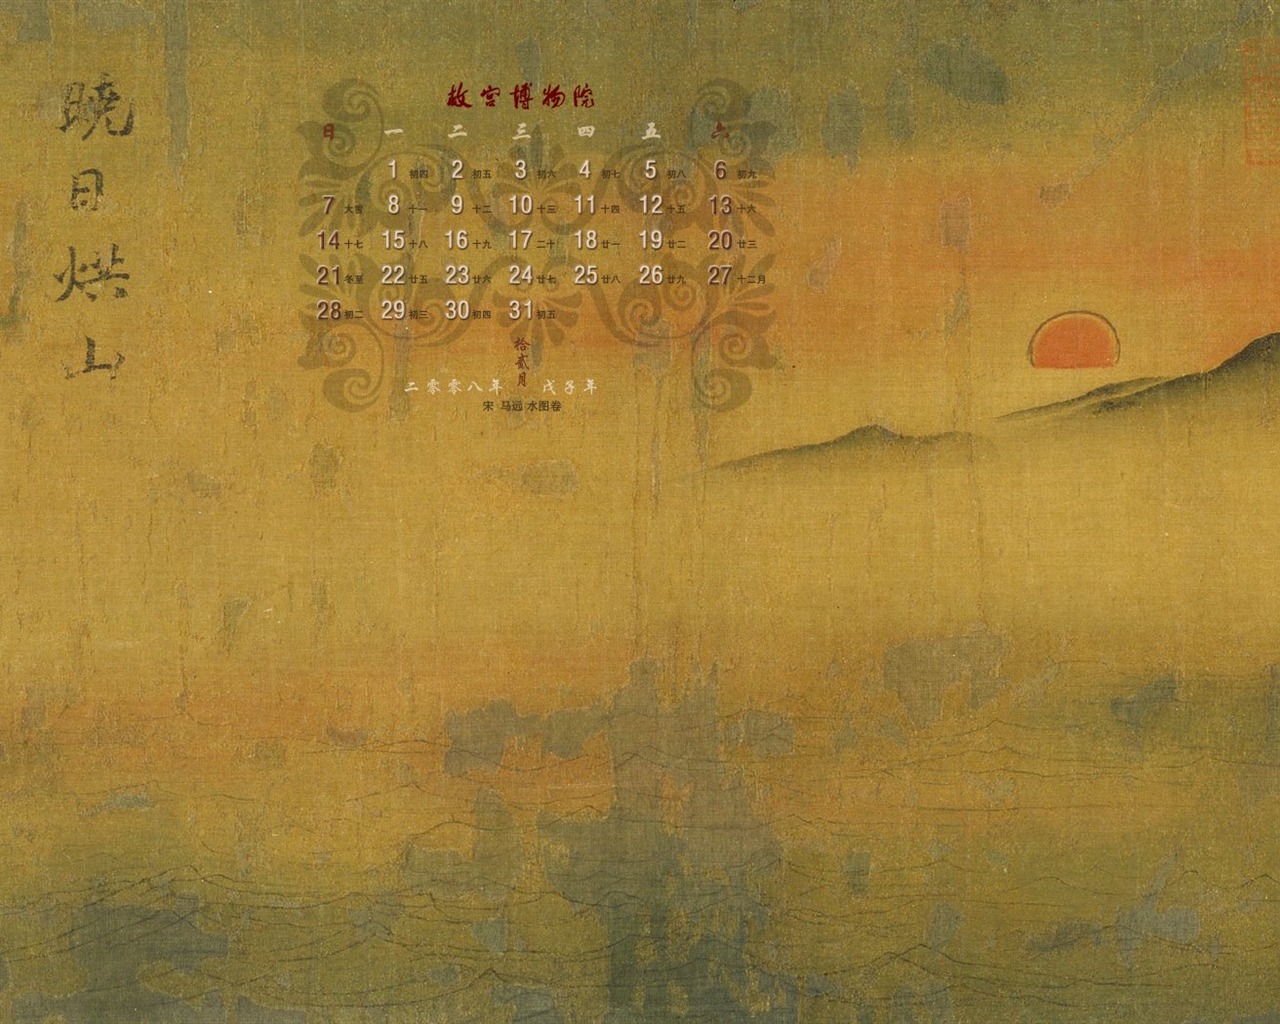 北京故宫博物院 文物展壁纸(二)27 - 1280x1024